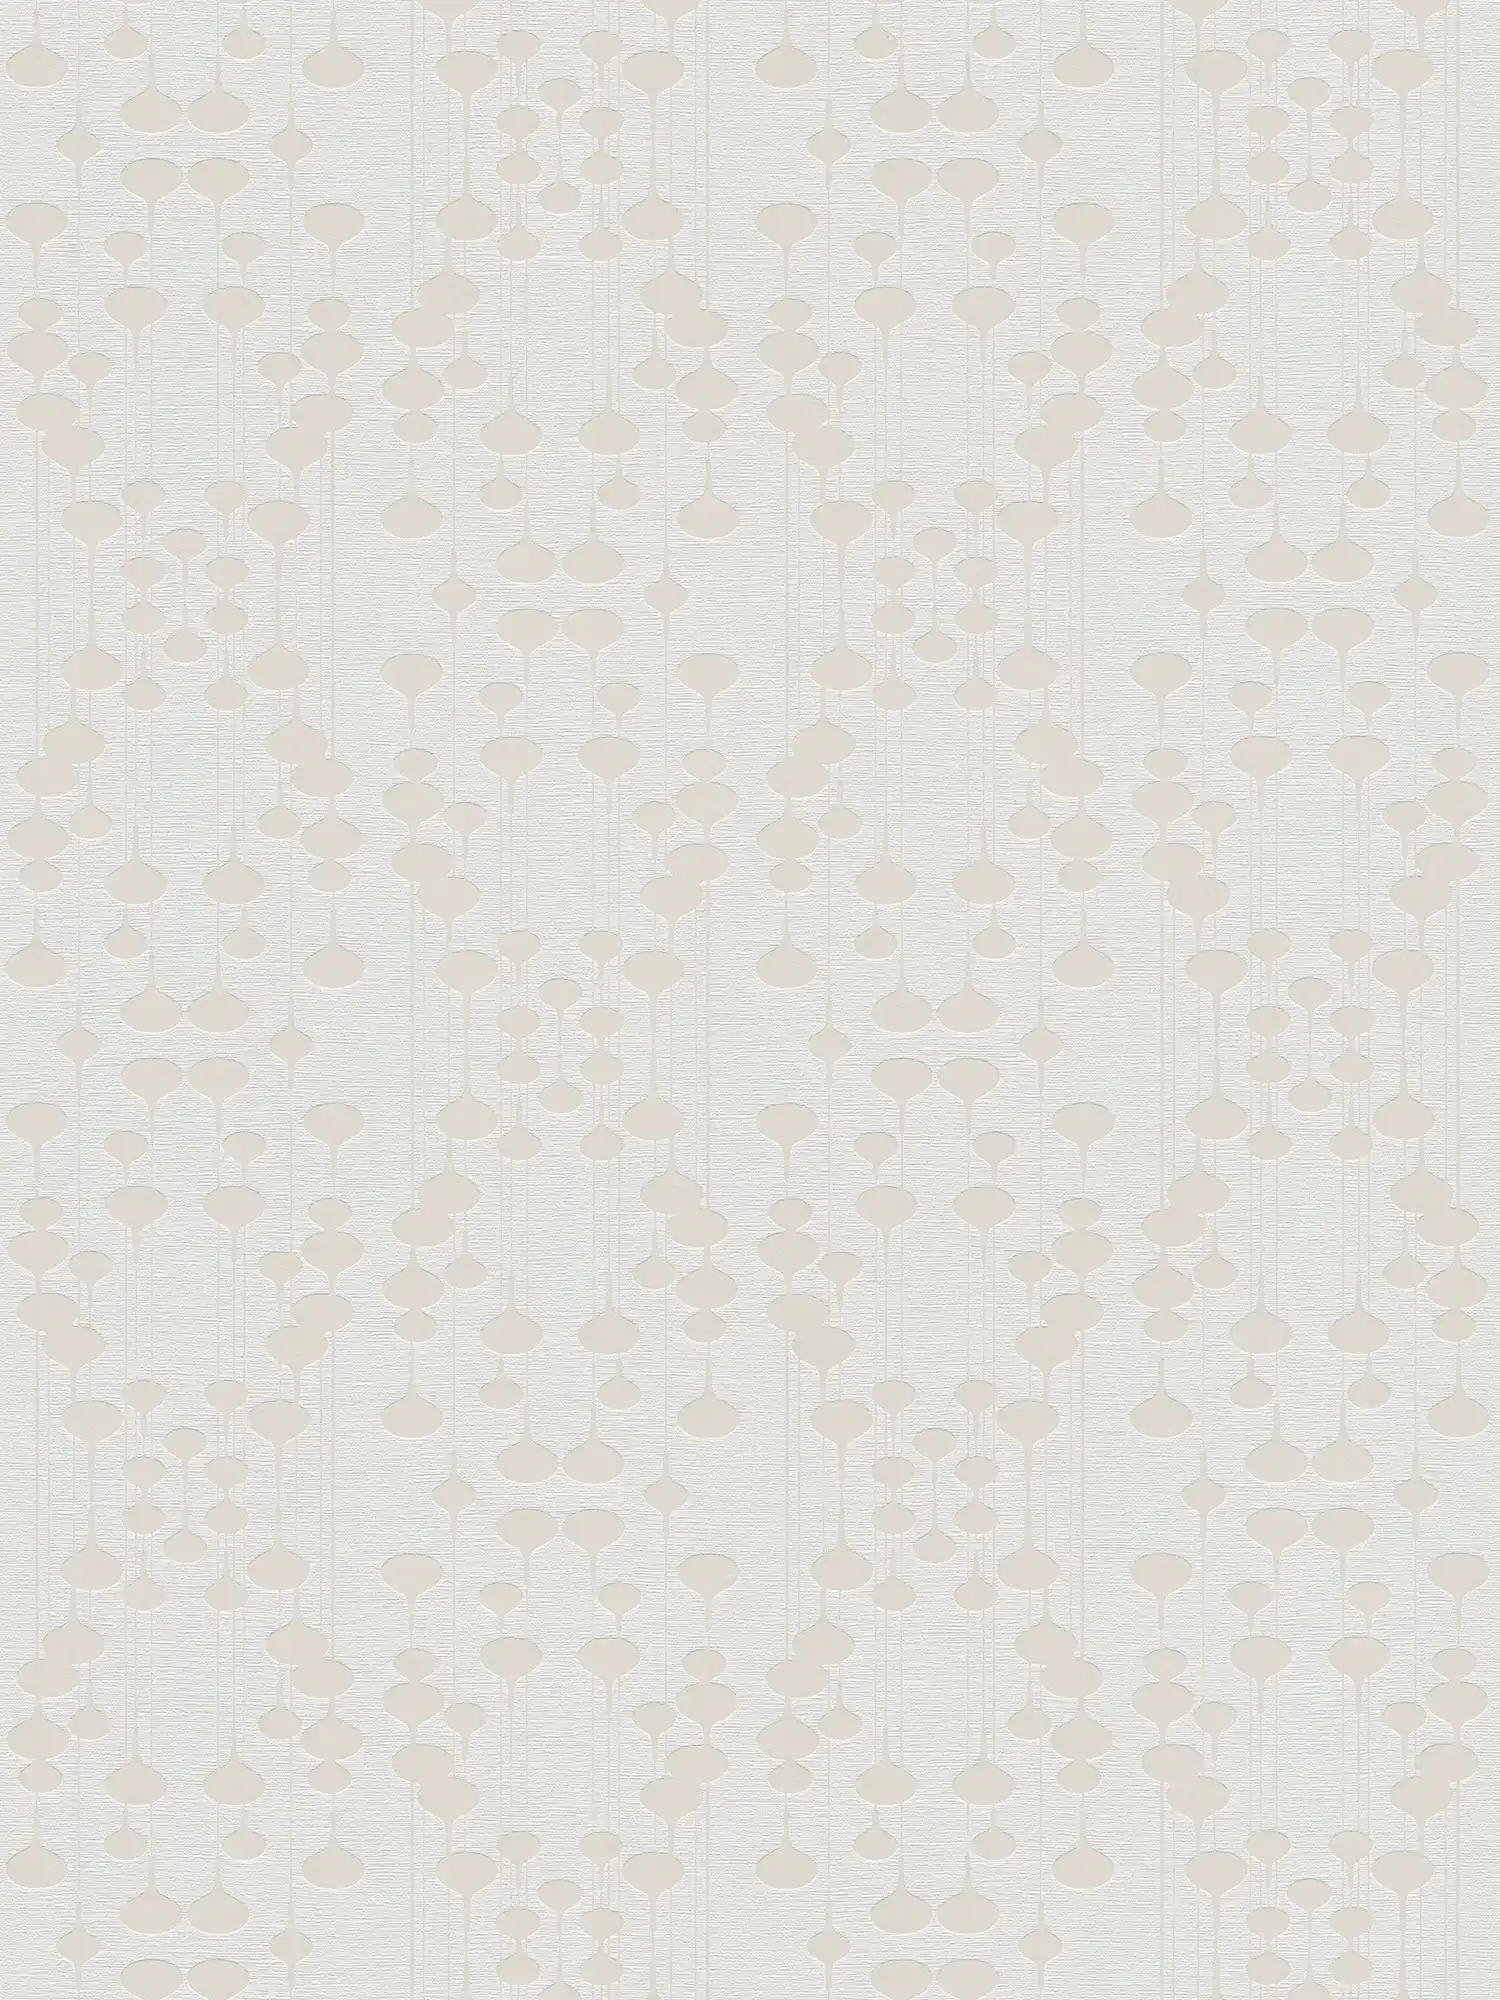 Papel pintado no tejido con diseño retro y efecto metálico - blanco, beige
